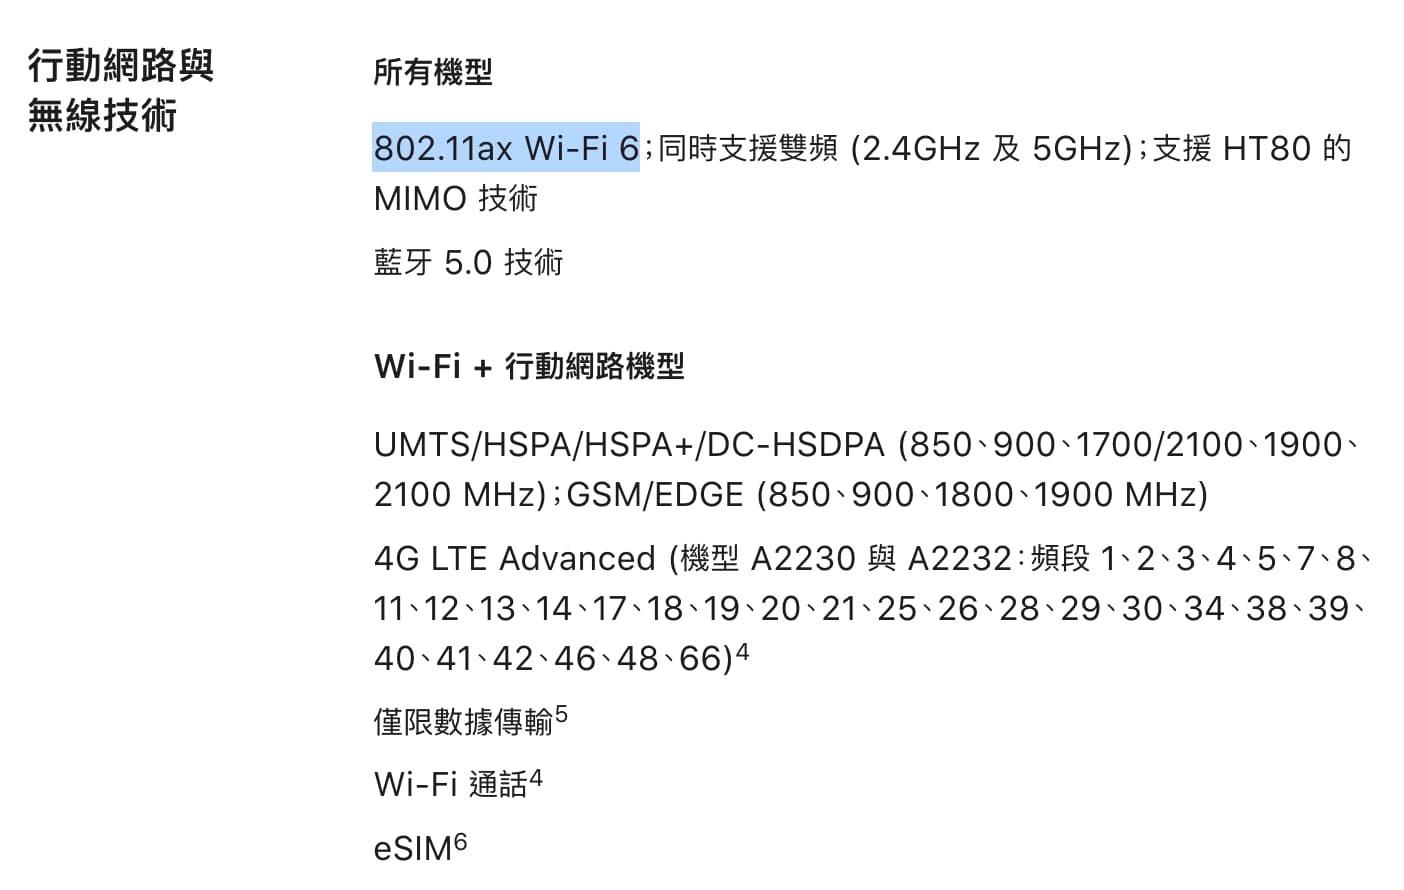 支援 802.11ax Wi-Fi 6 標準 連網速度更快